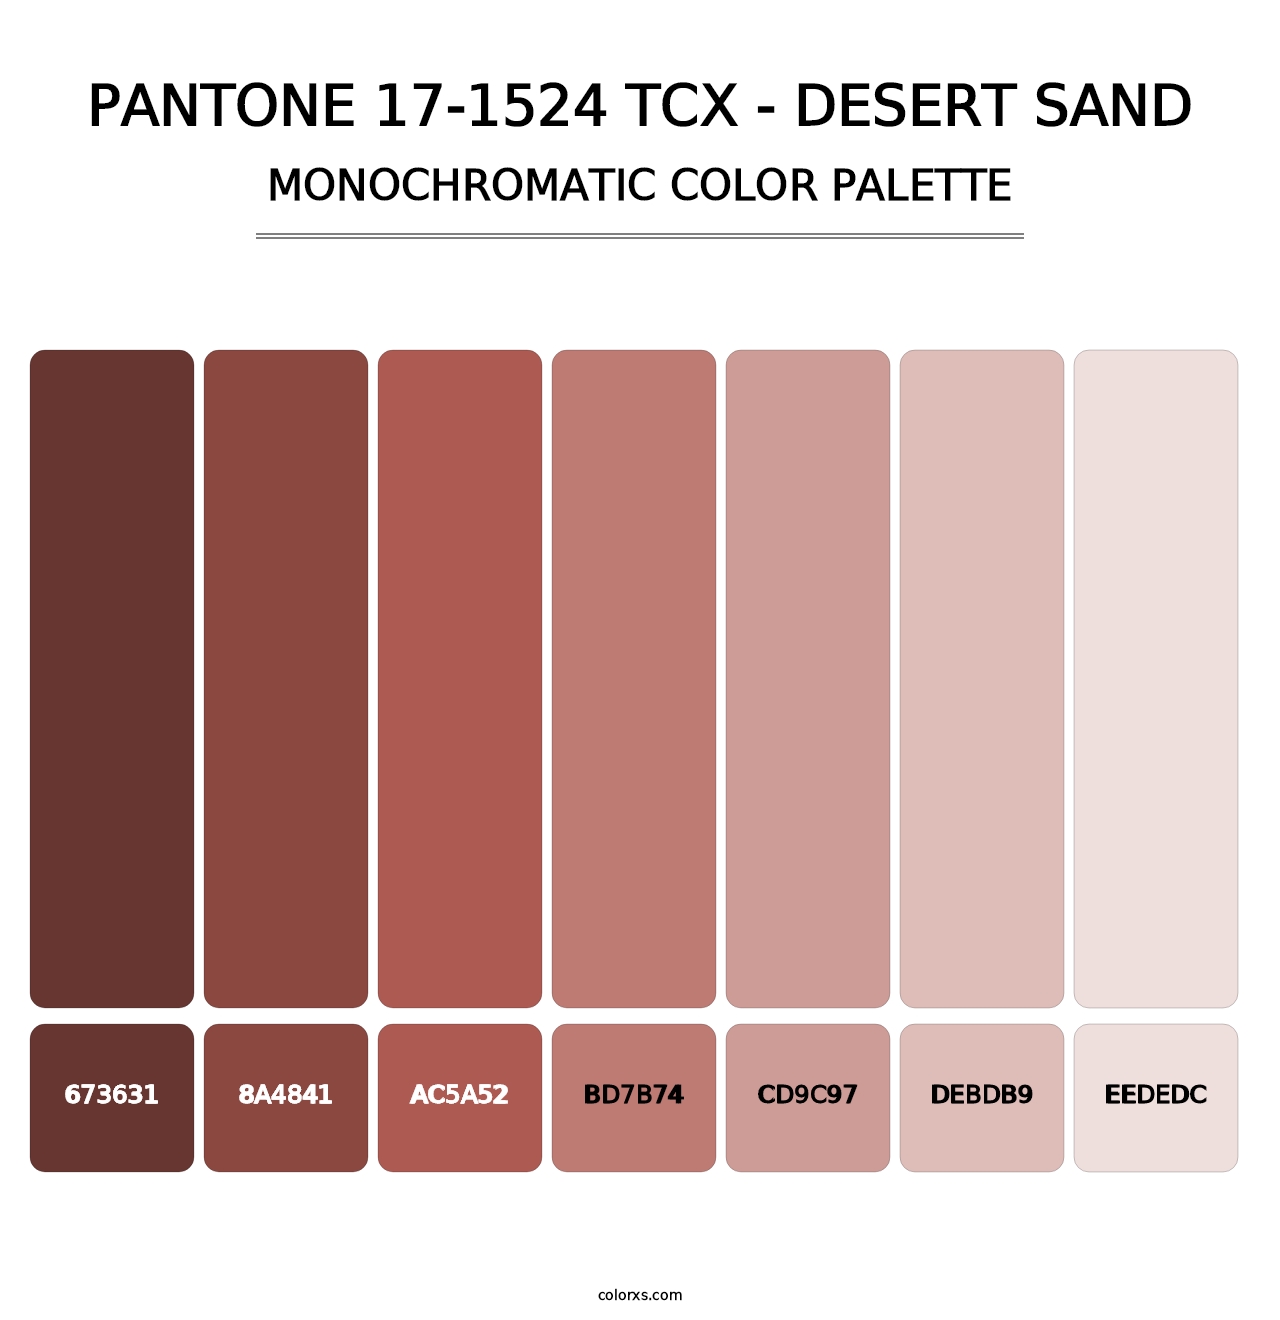 PANTONE 17-1524 TCX - Desert Sand - Monochromatic Color Palette